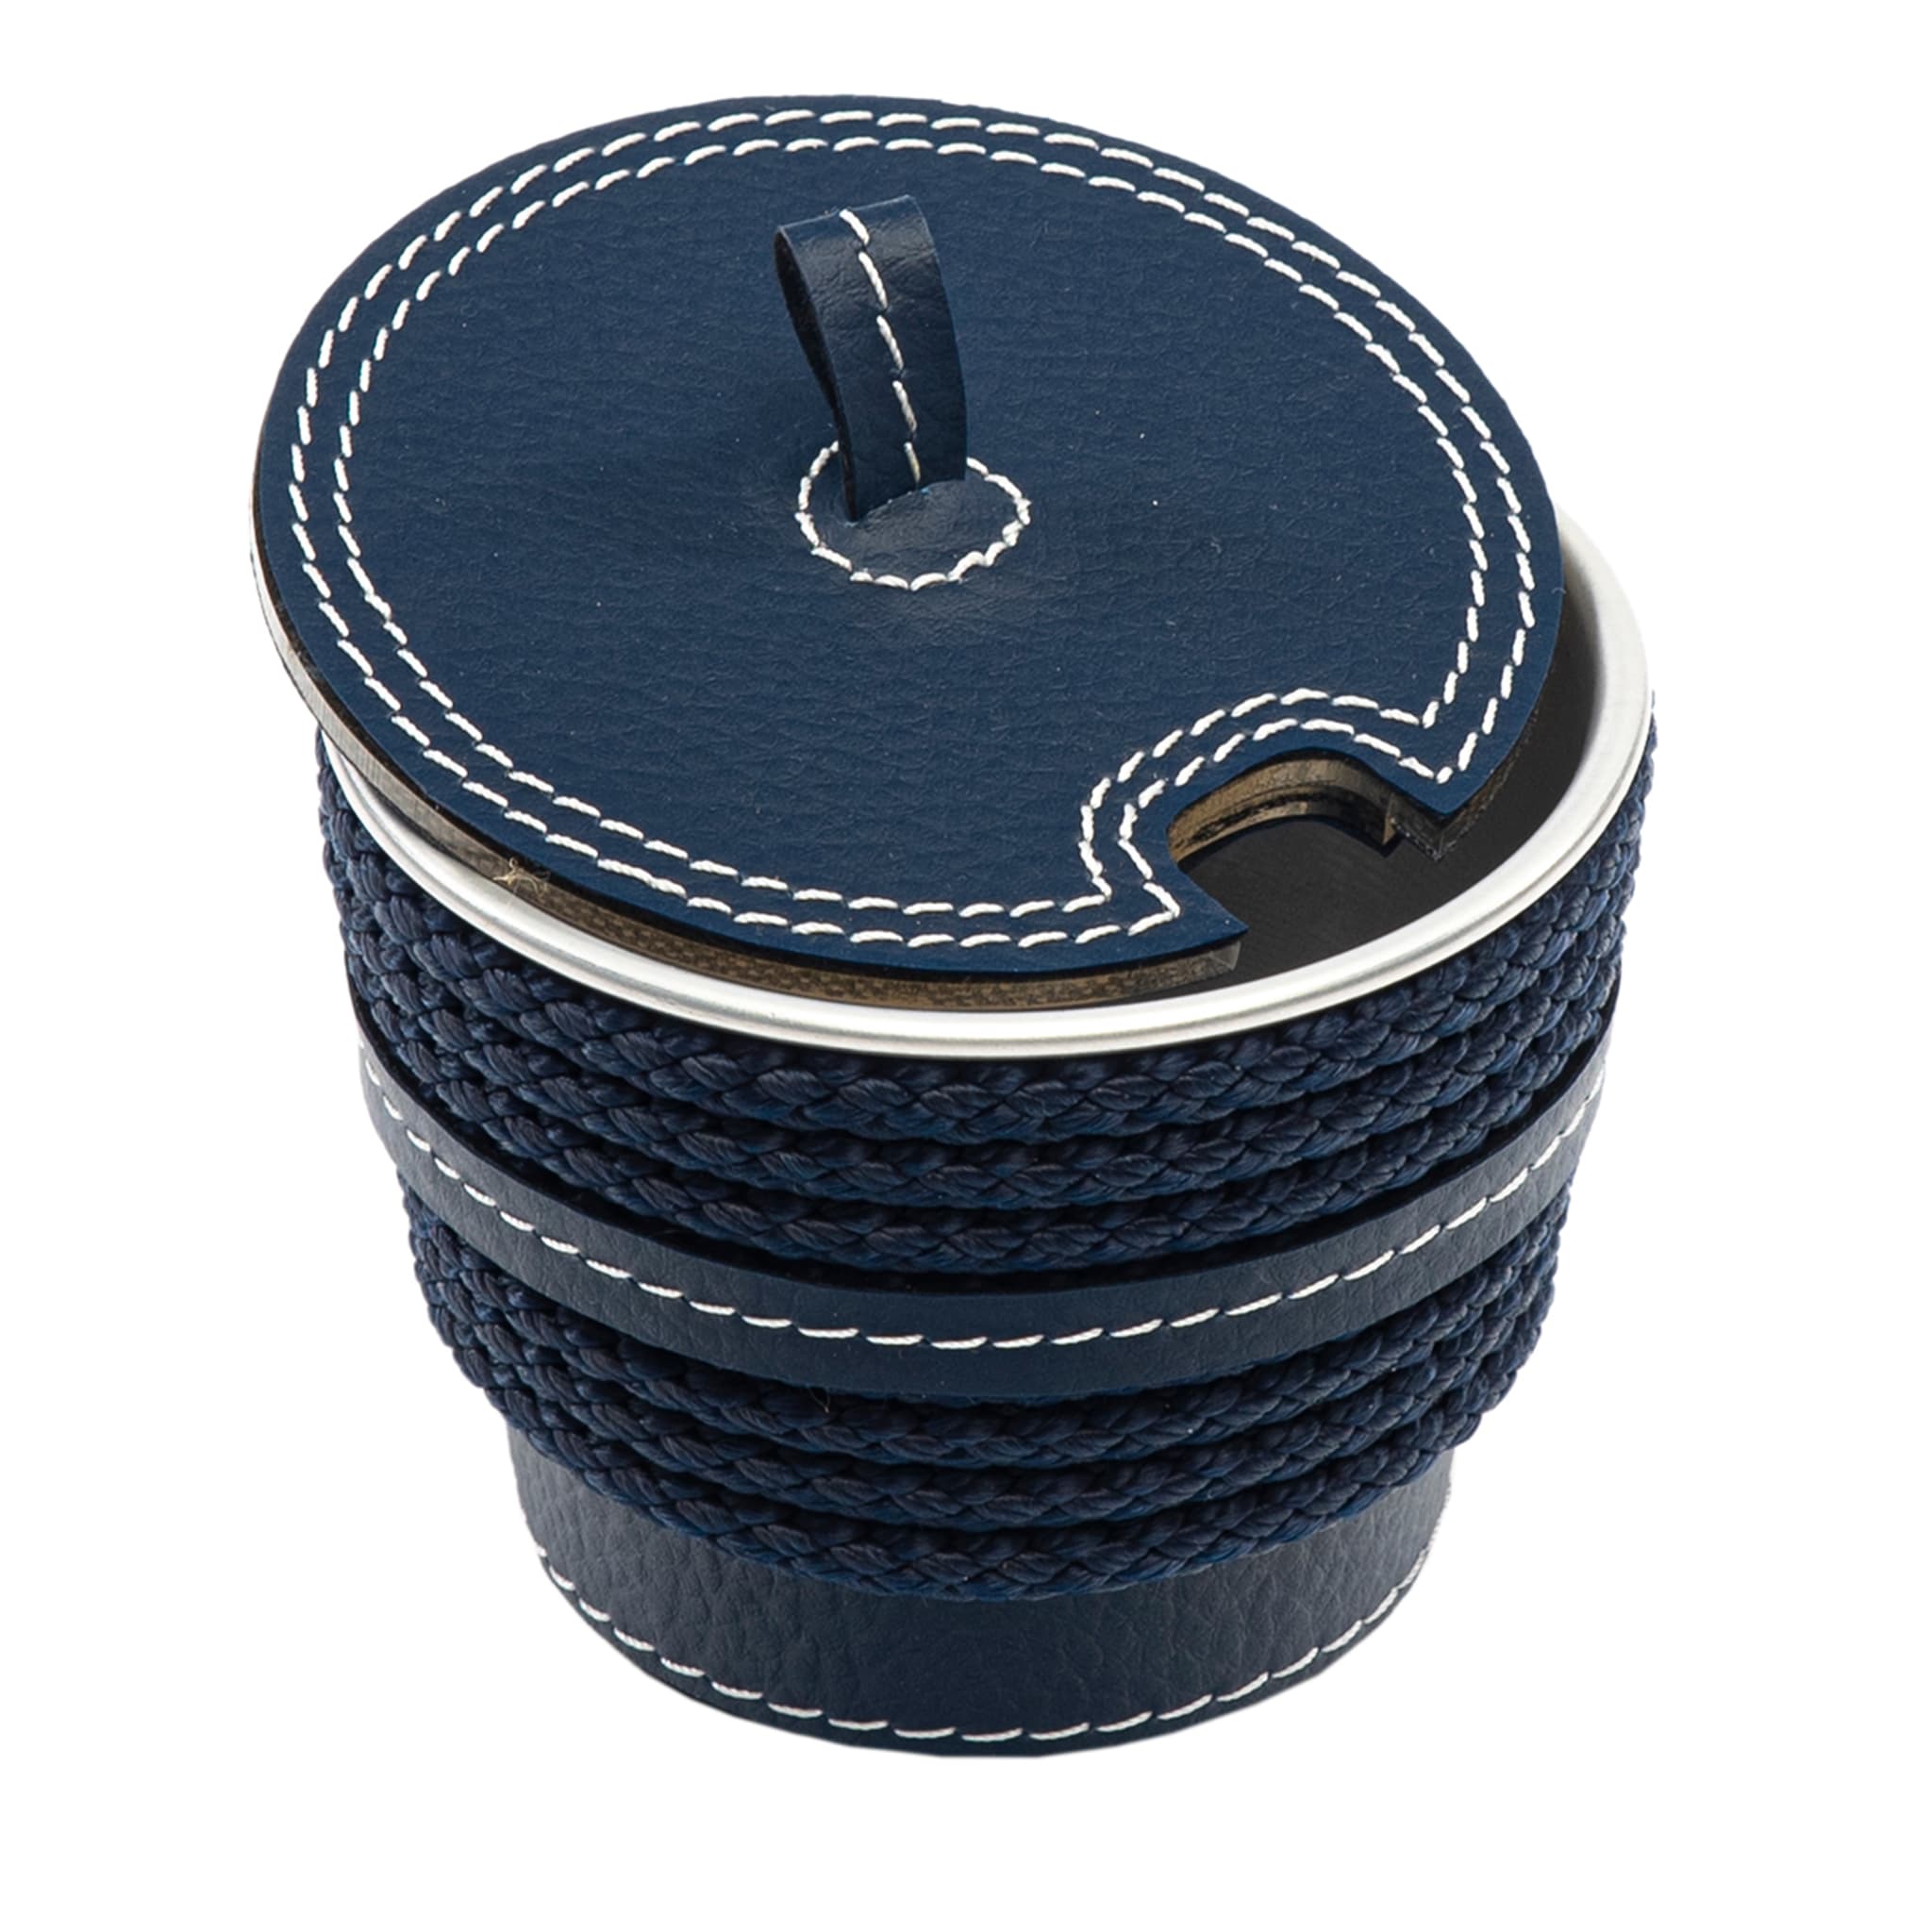 Sucrier bleu en éco-cuir avec inserts en corde - Vue principale